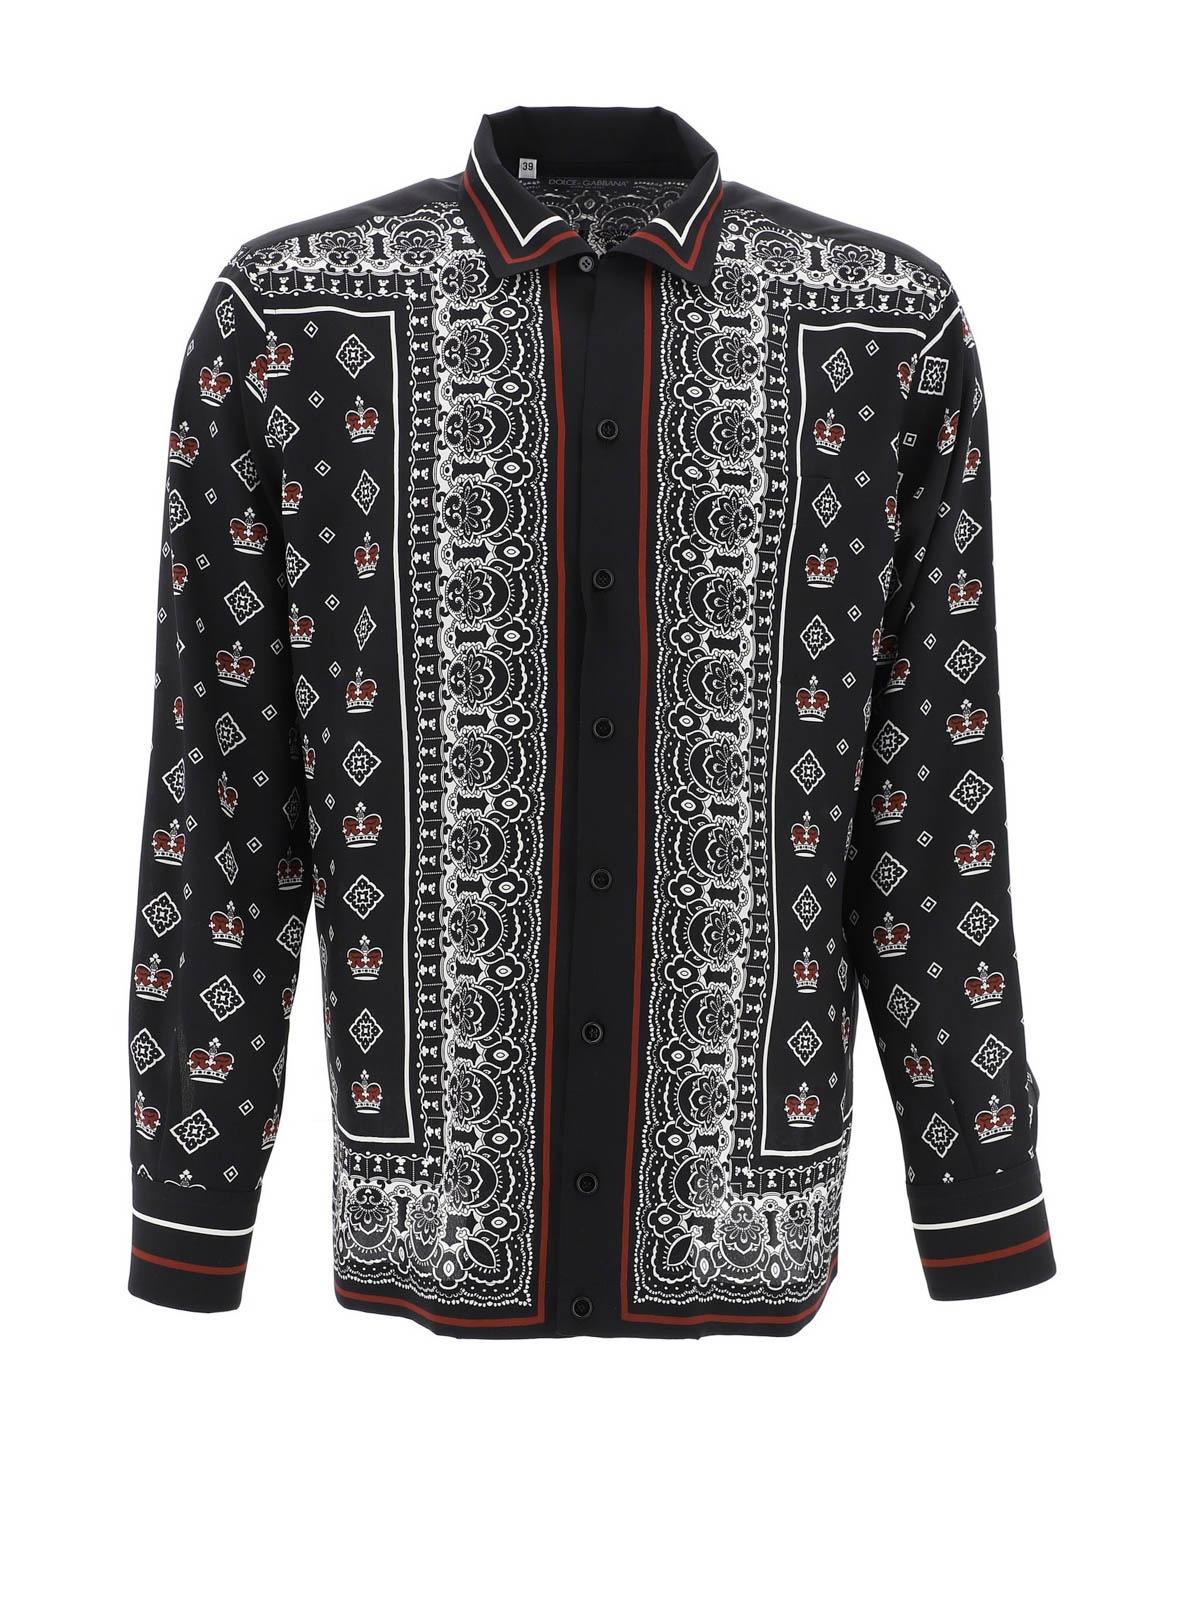 Dolce & Gabbana Bandana Print Silk Shirt in Black for Men - Lyst